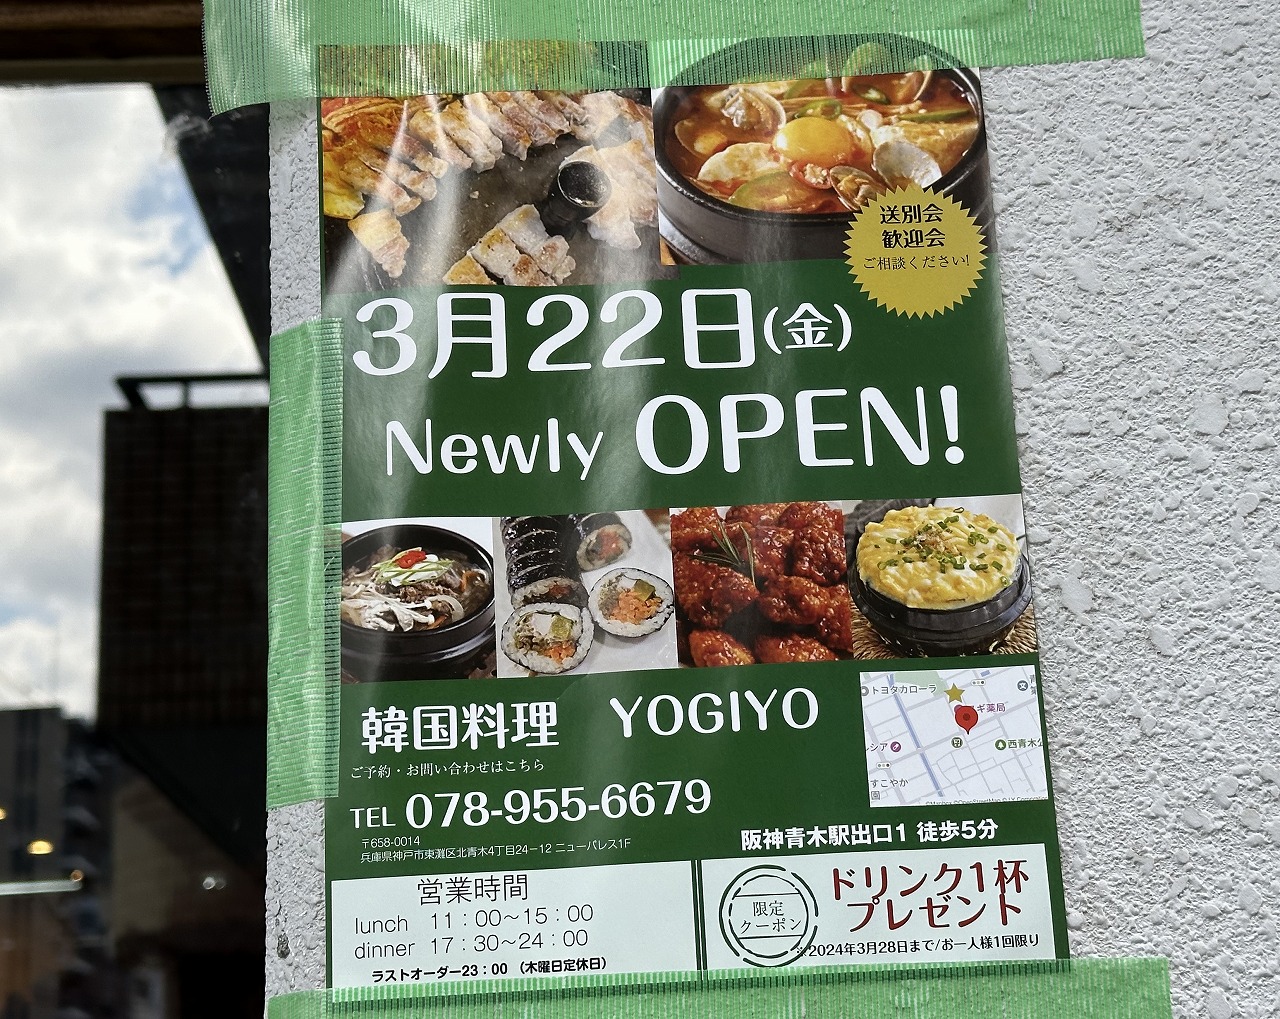 「韓国料理 YOGIYO」